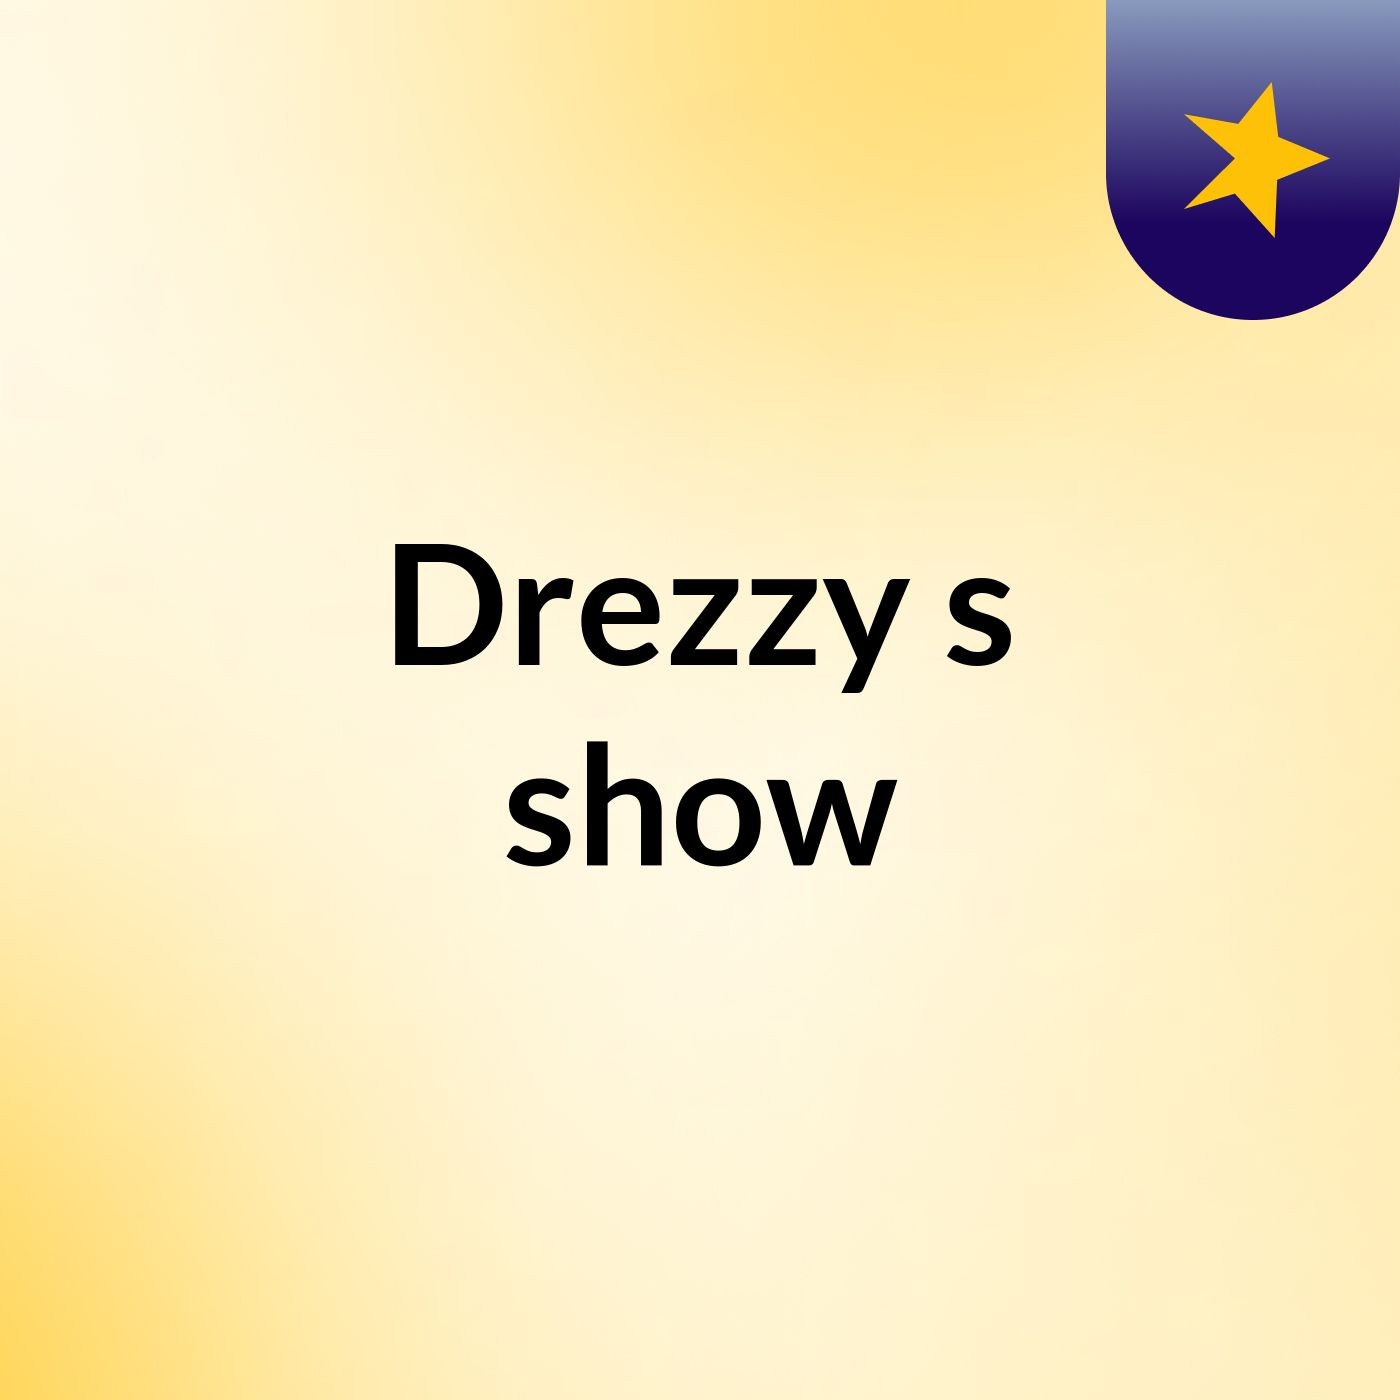 Drezzy's show